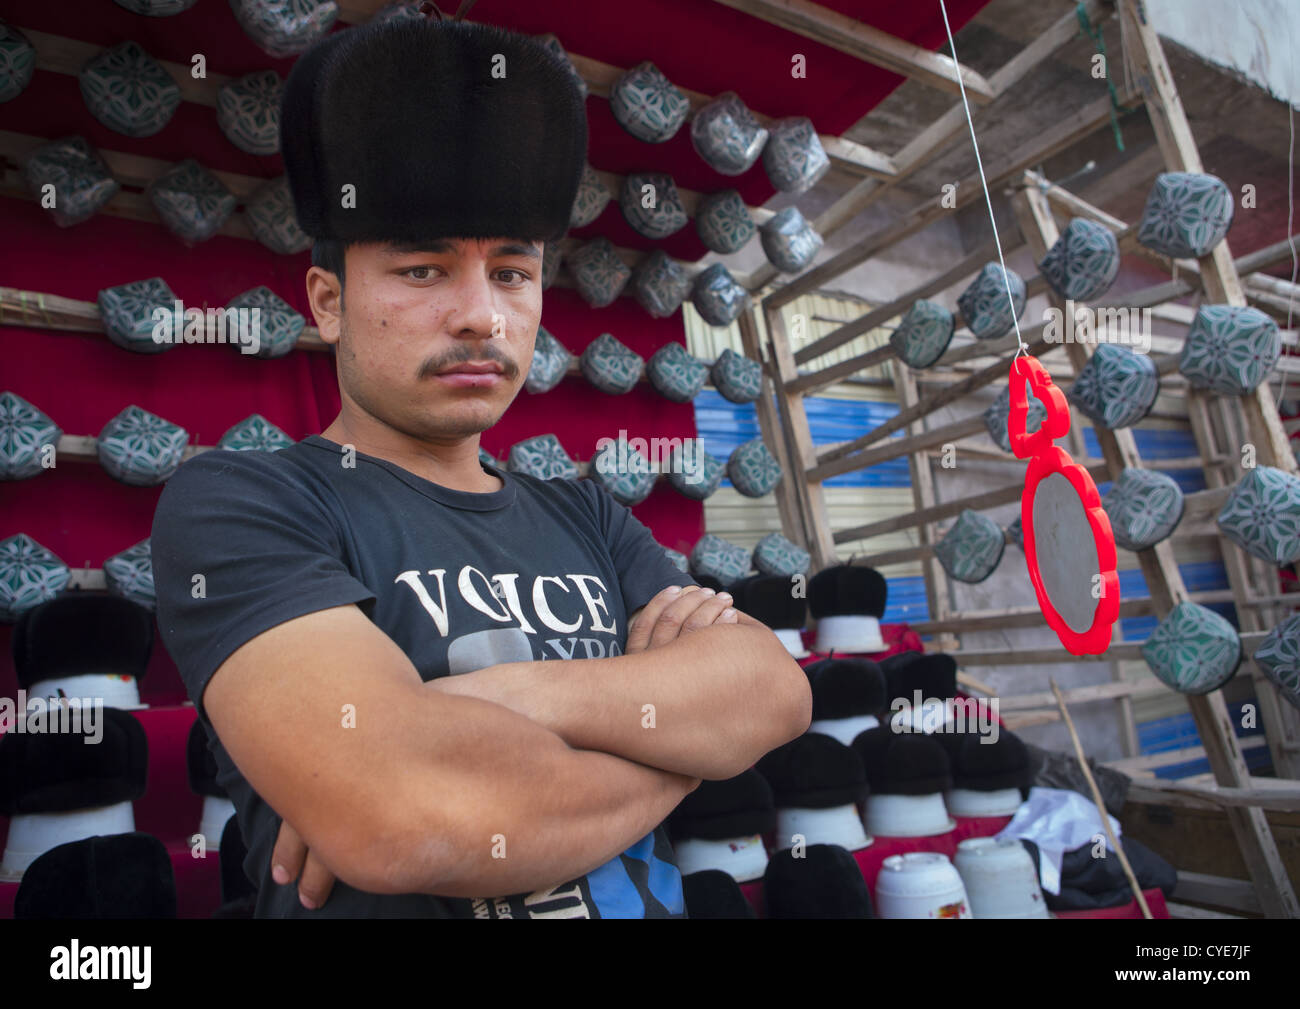 Jeune homme musulman Doppi vente Chapeaux, Marché du Village d'Opale, la région autonome ouïghoure du Xinjiang, Chine Banque D'Images